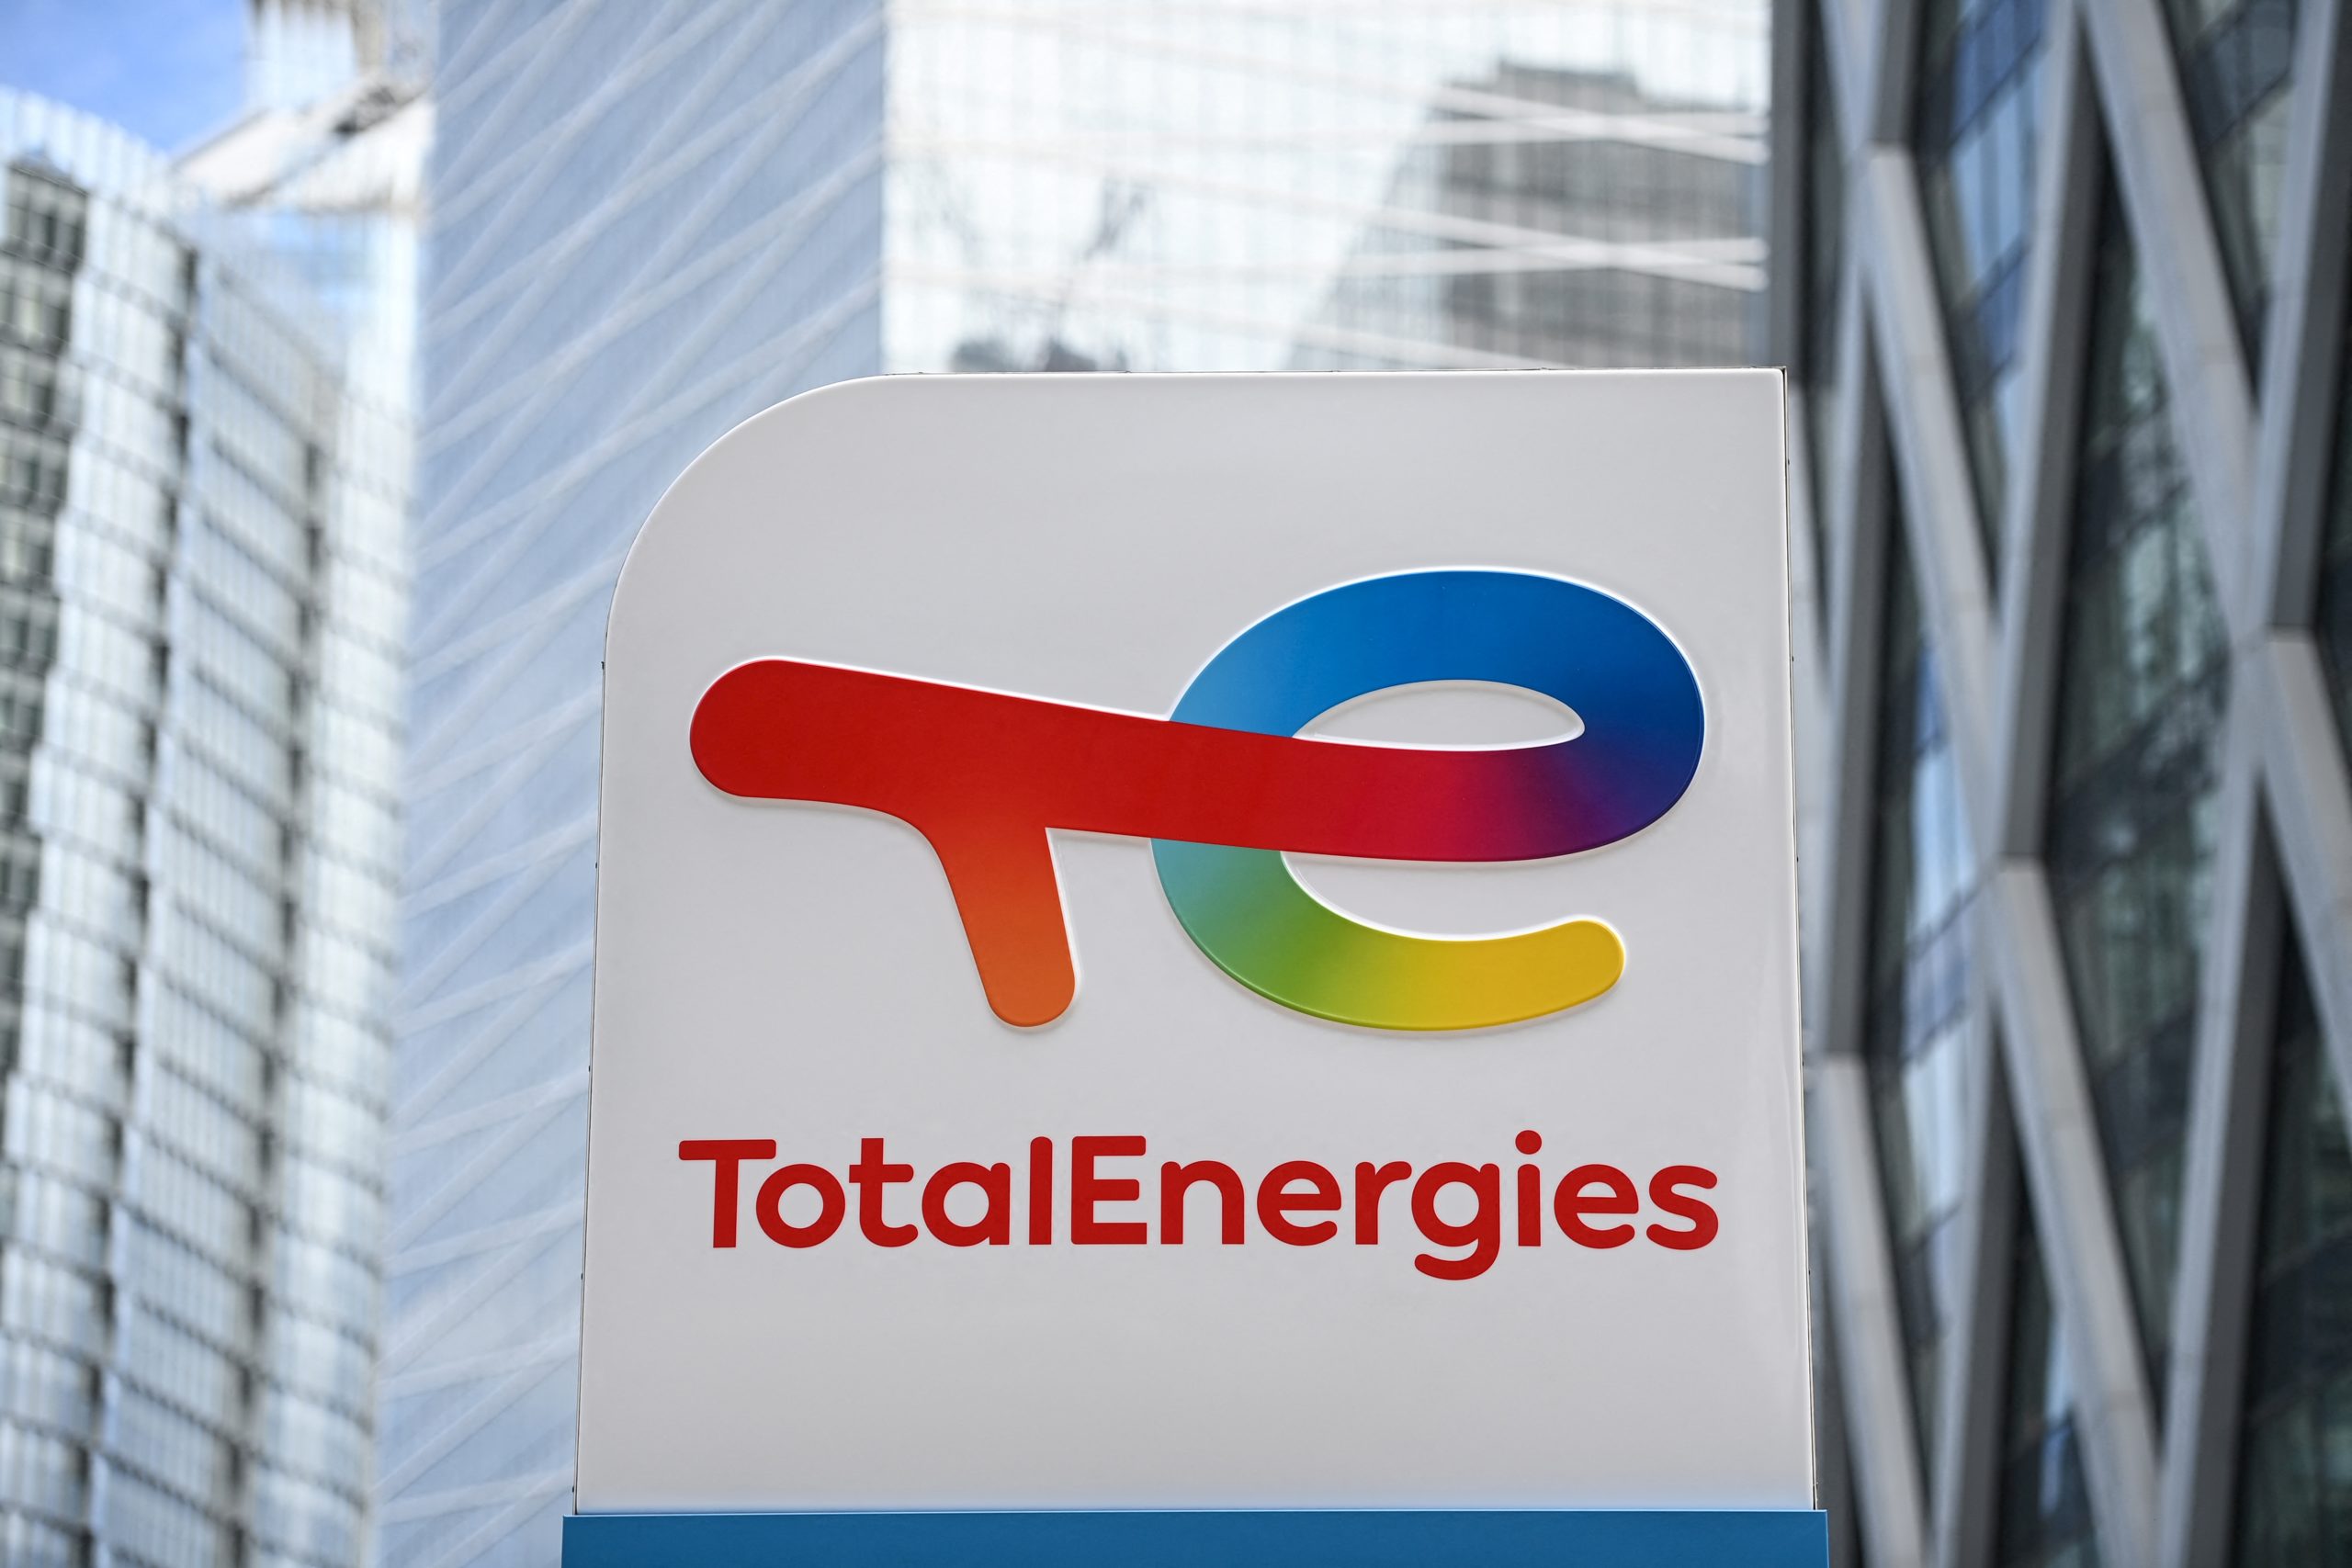 TotalEnergies installera 11 000 bornes de recharge rapide en Chine